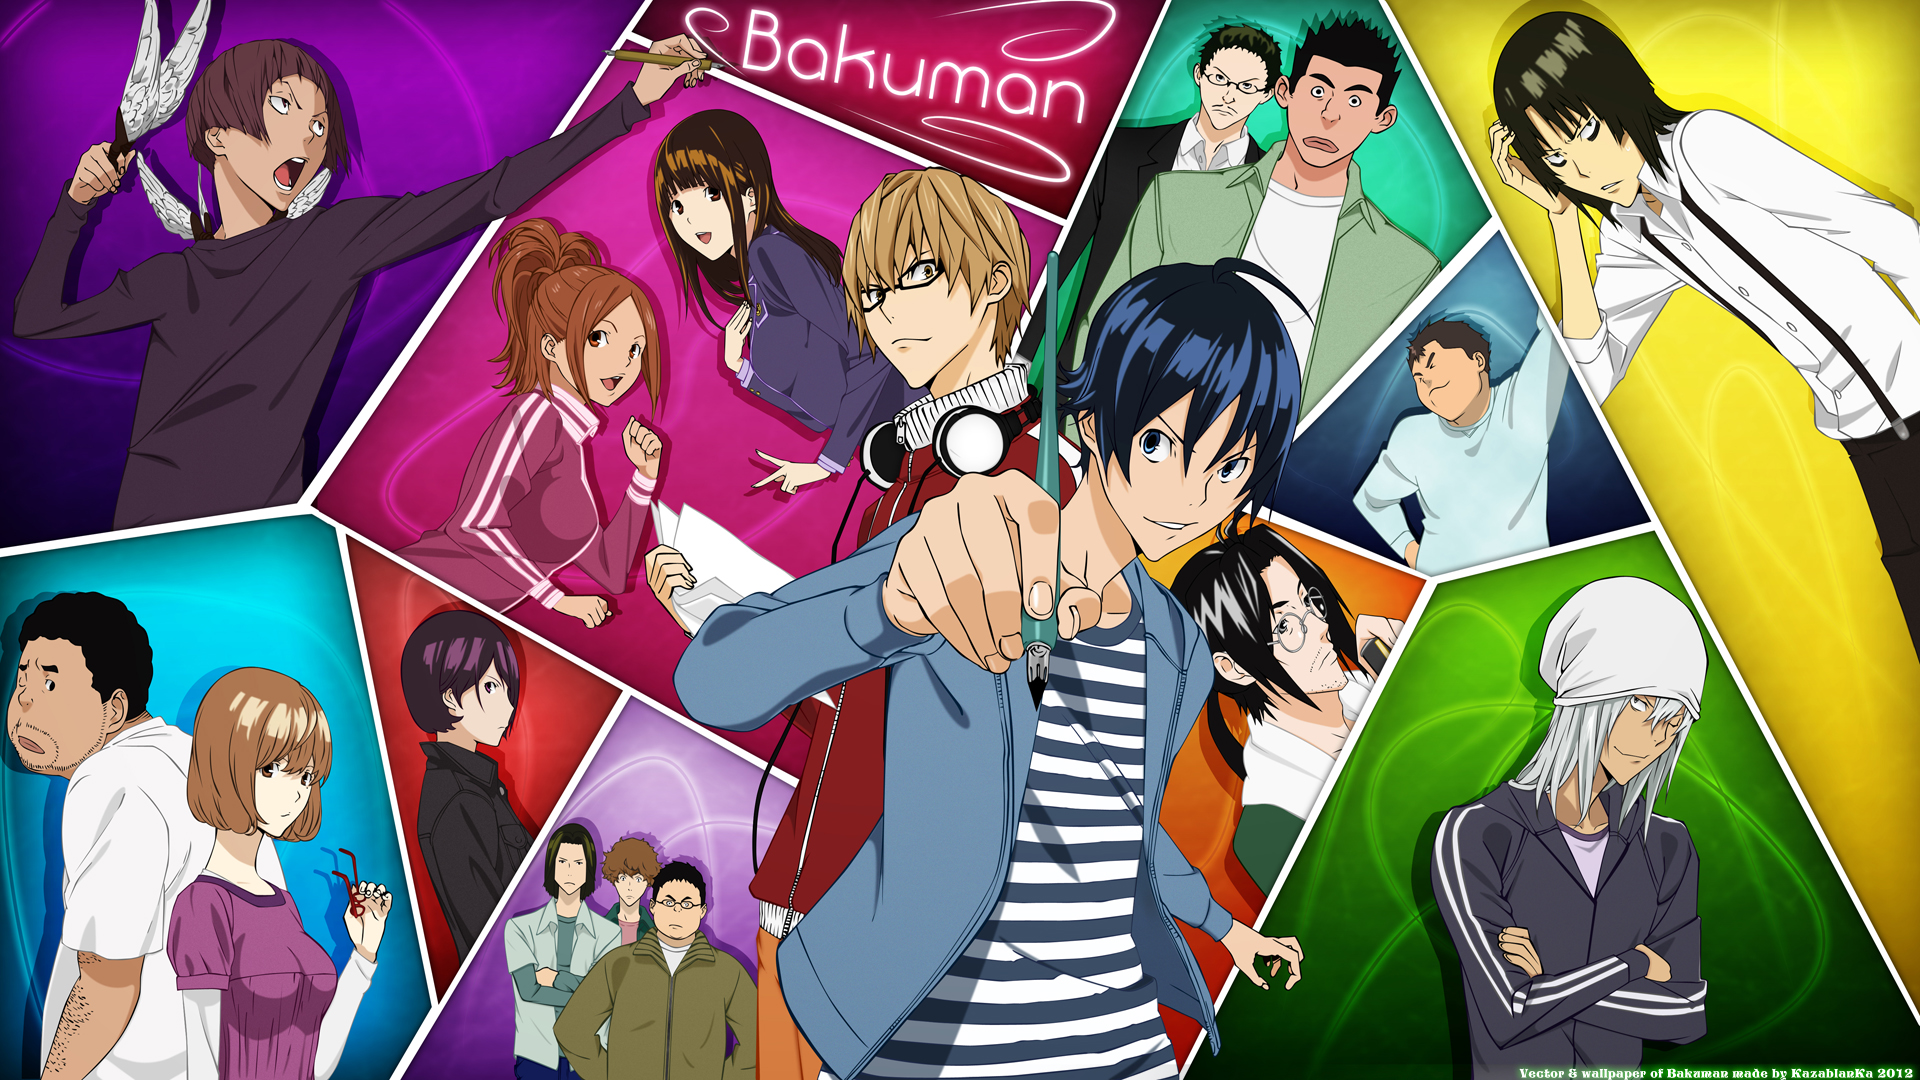 bakuman - Shounen Anime Önerileri 2 !! - Figurex Anime Önerileri